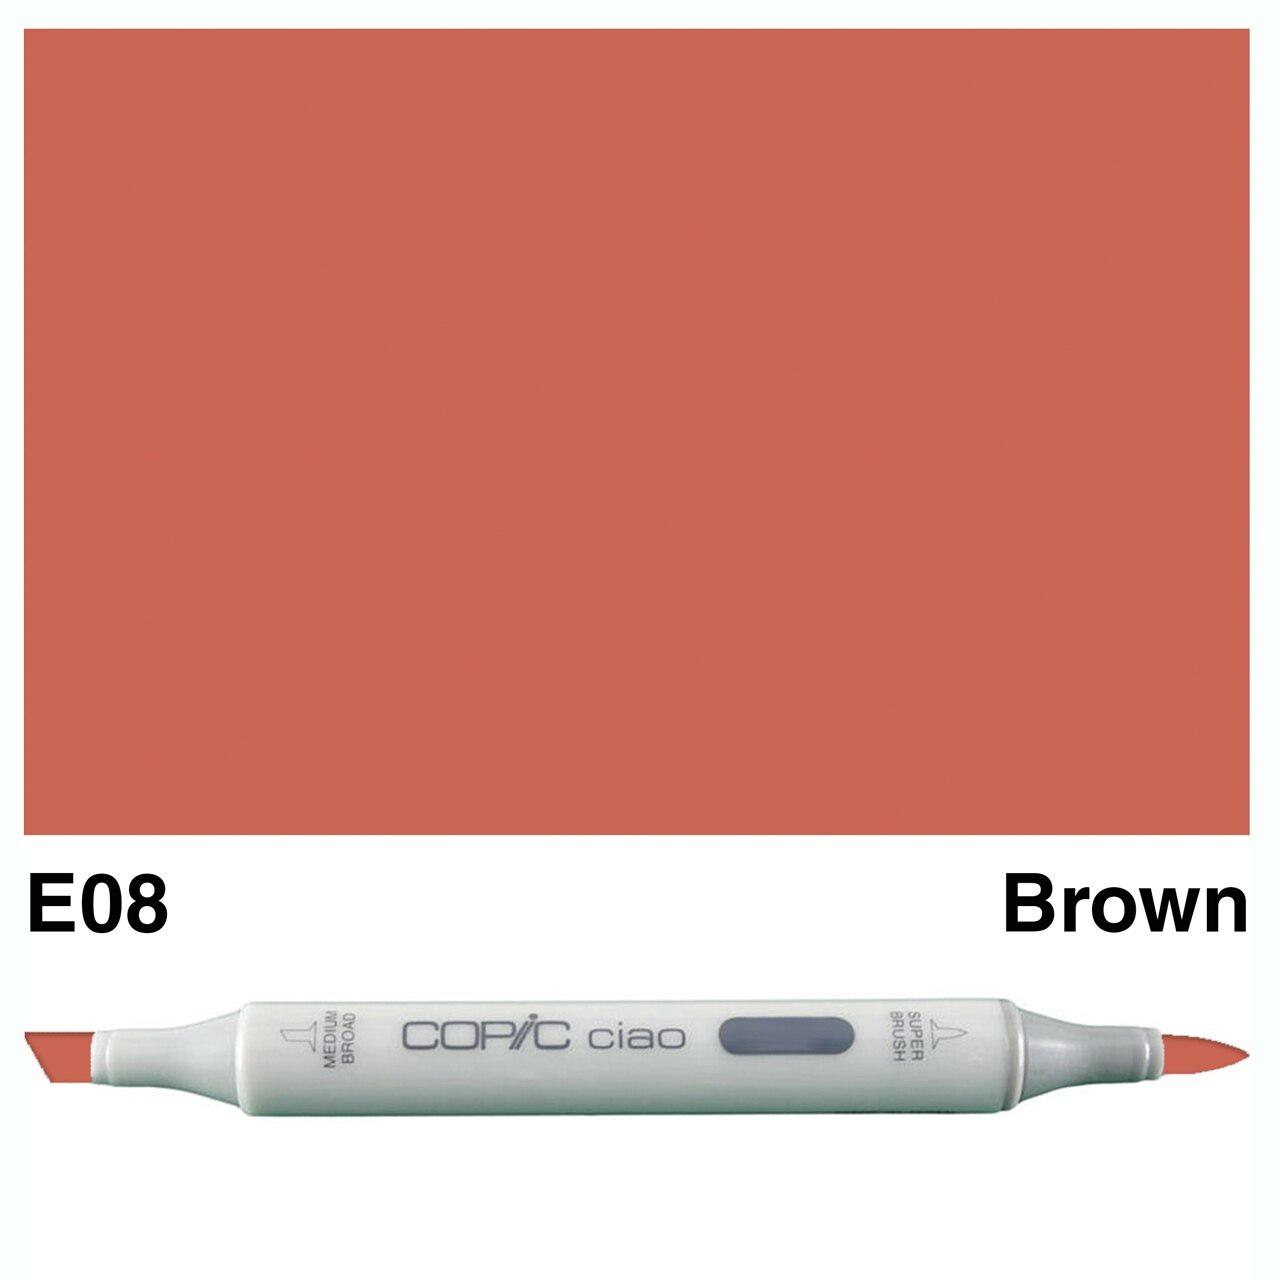 Copic - Ciao Marker - Brown - E08-ScrapbookPal